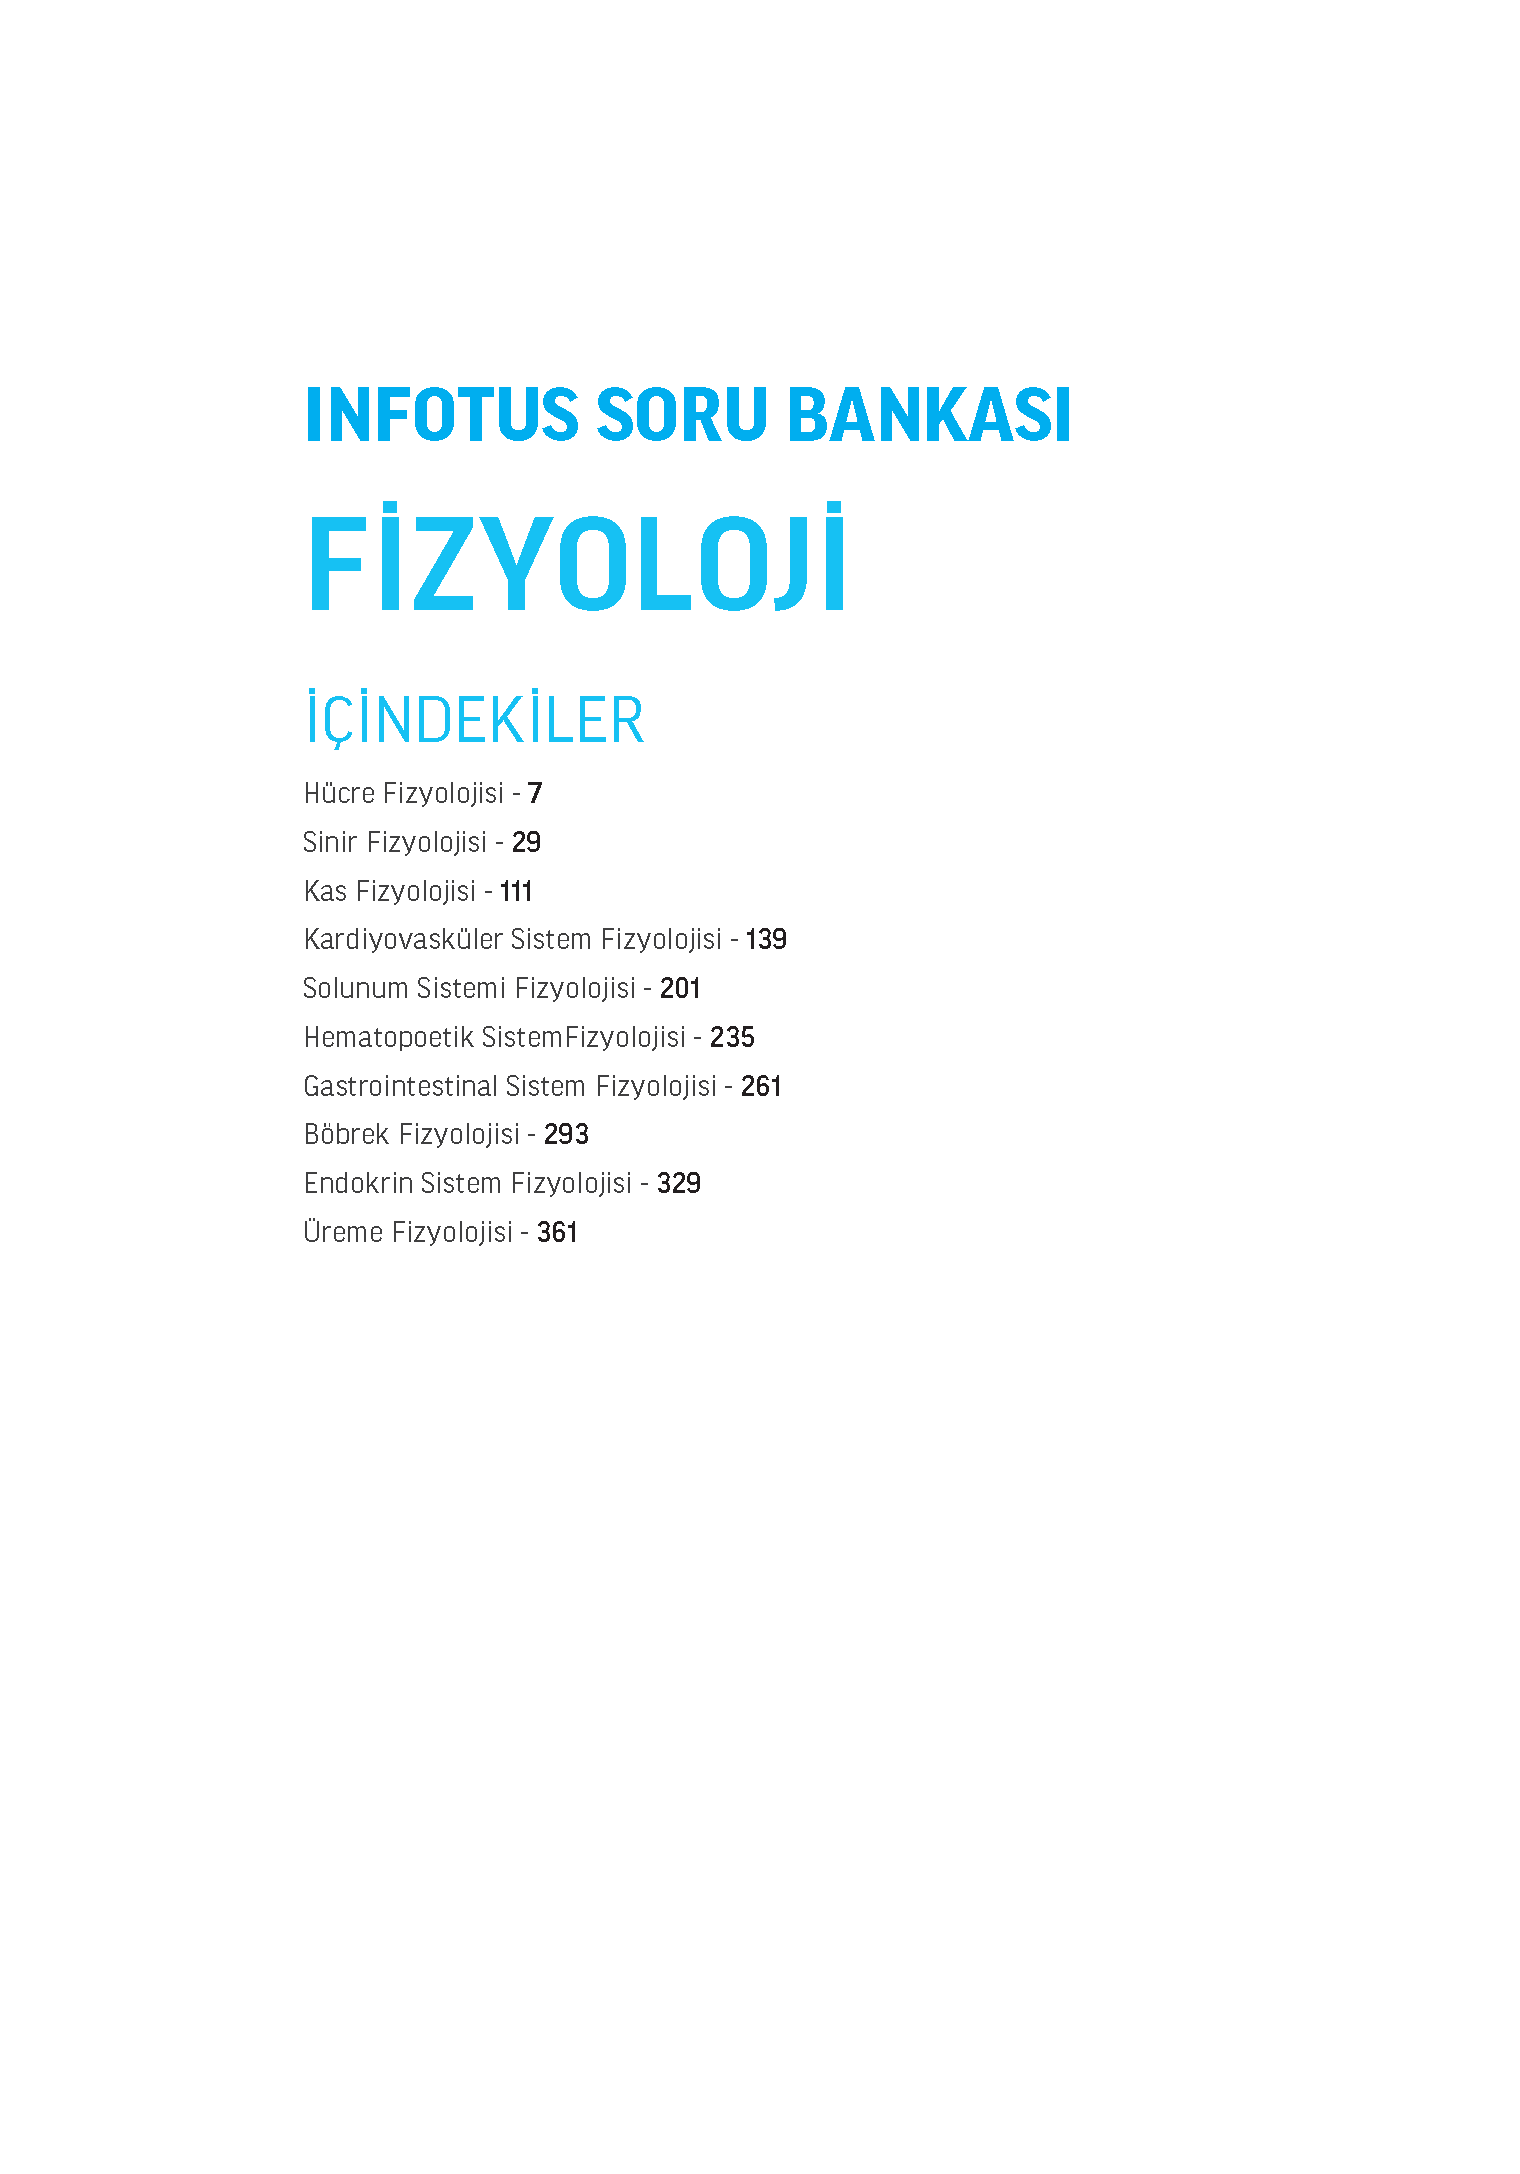 INFOTUS SORU BANKASI FIZYOLOJI (2)_Page_003